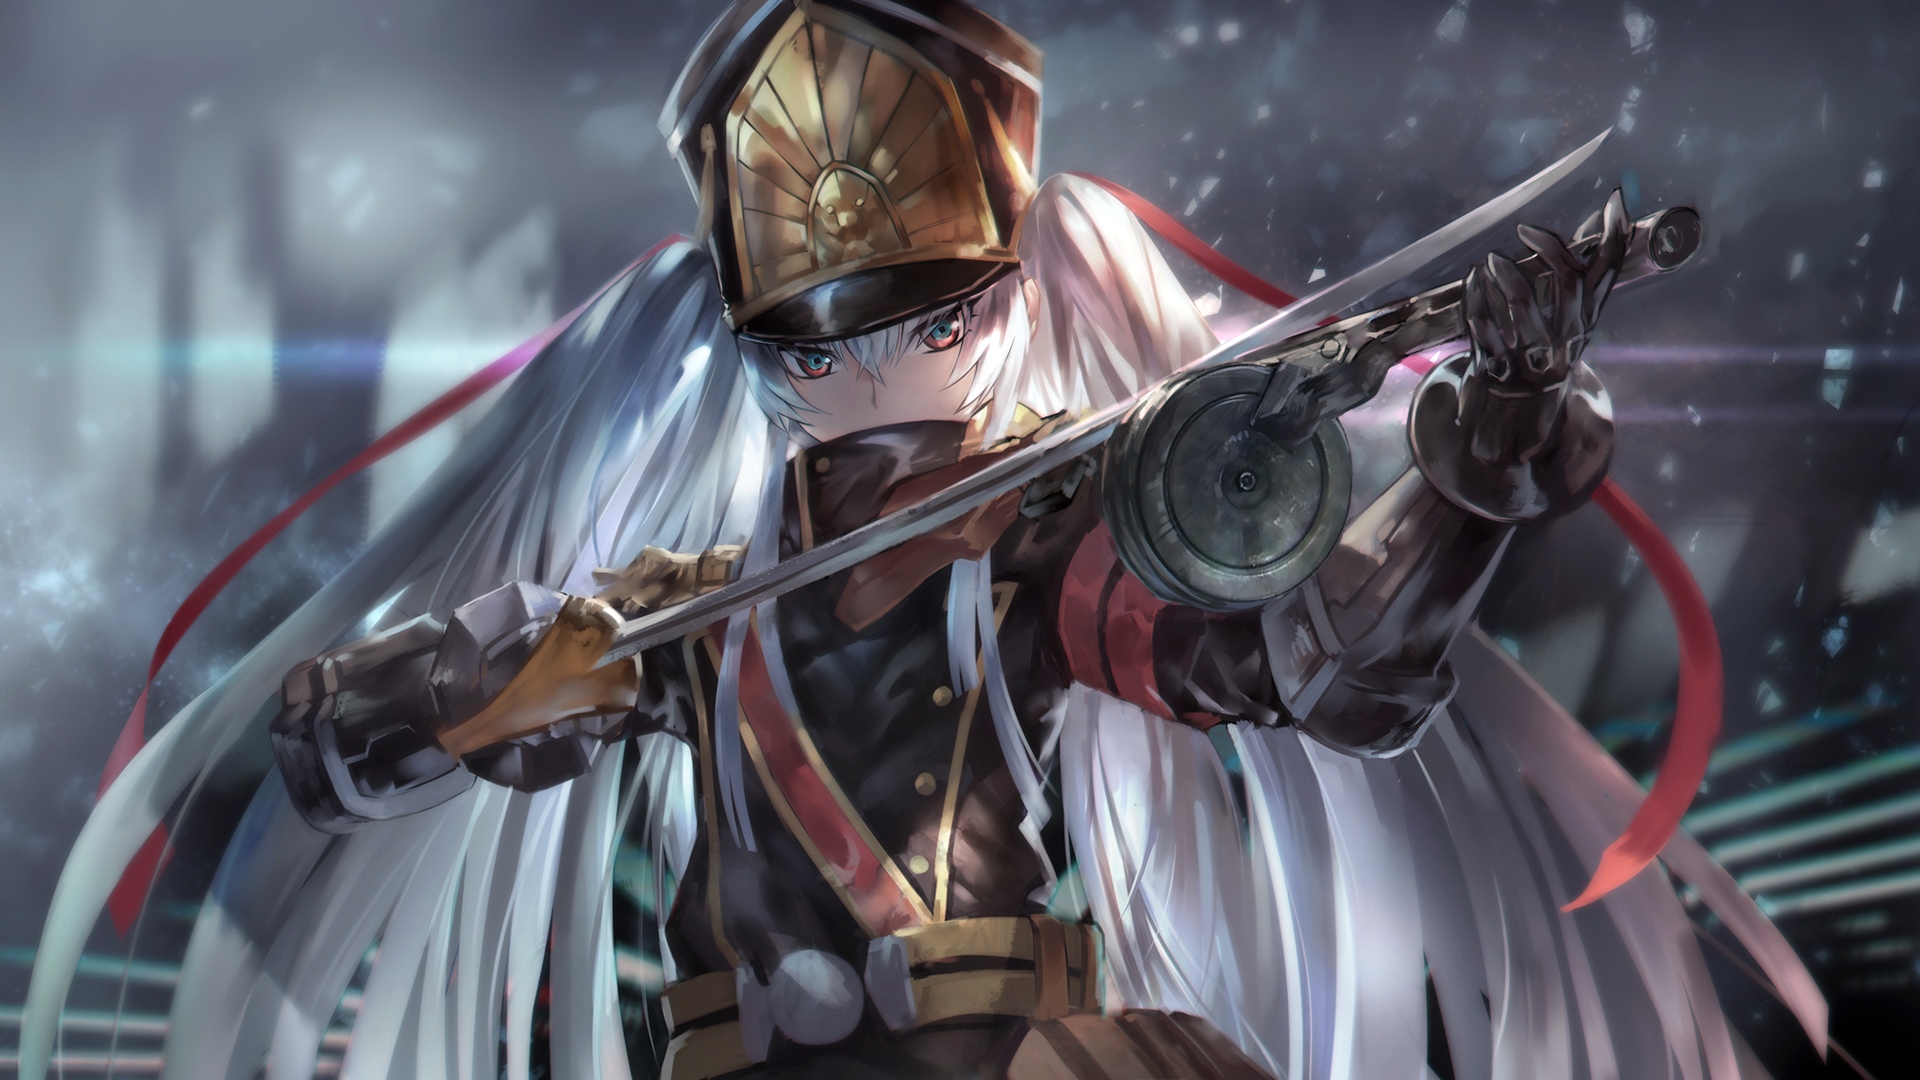 Wallpaper Sword and gun, Re:creators, anime girl